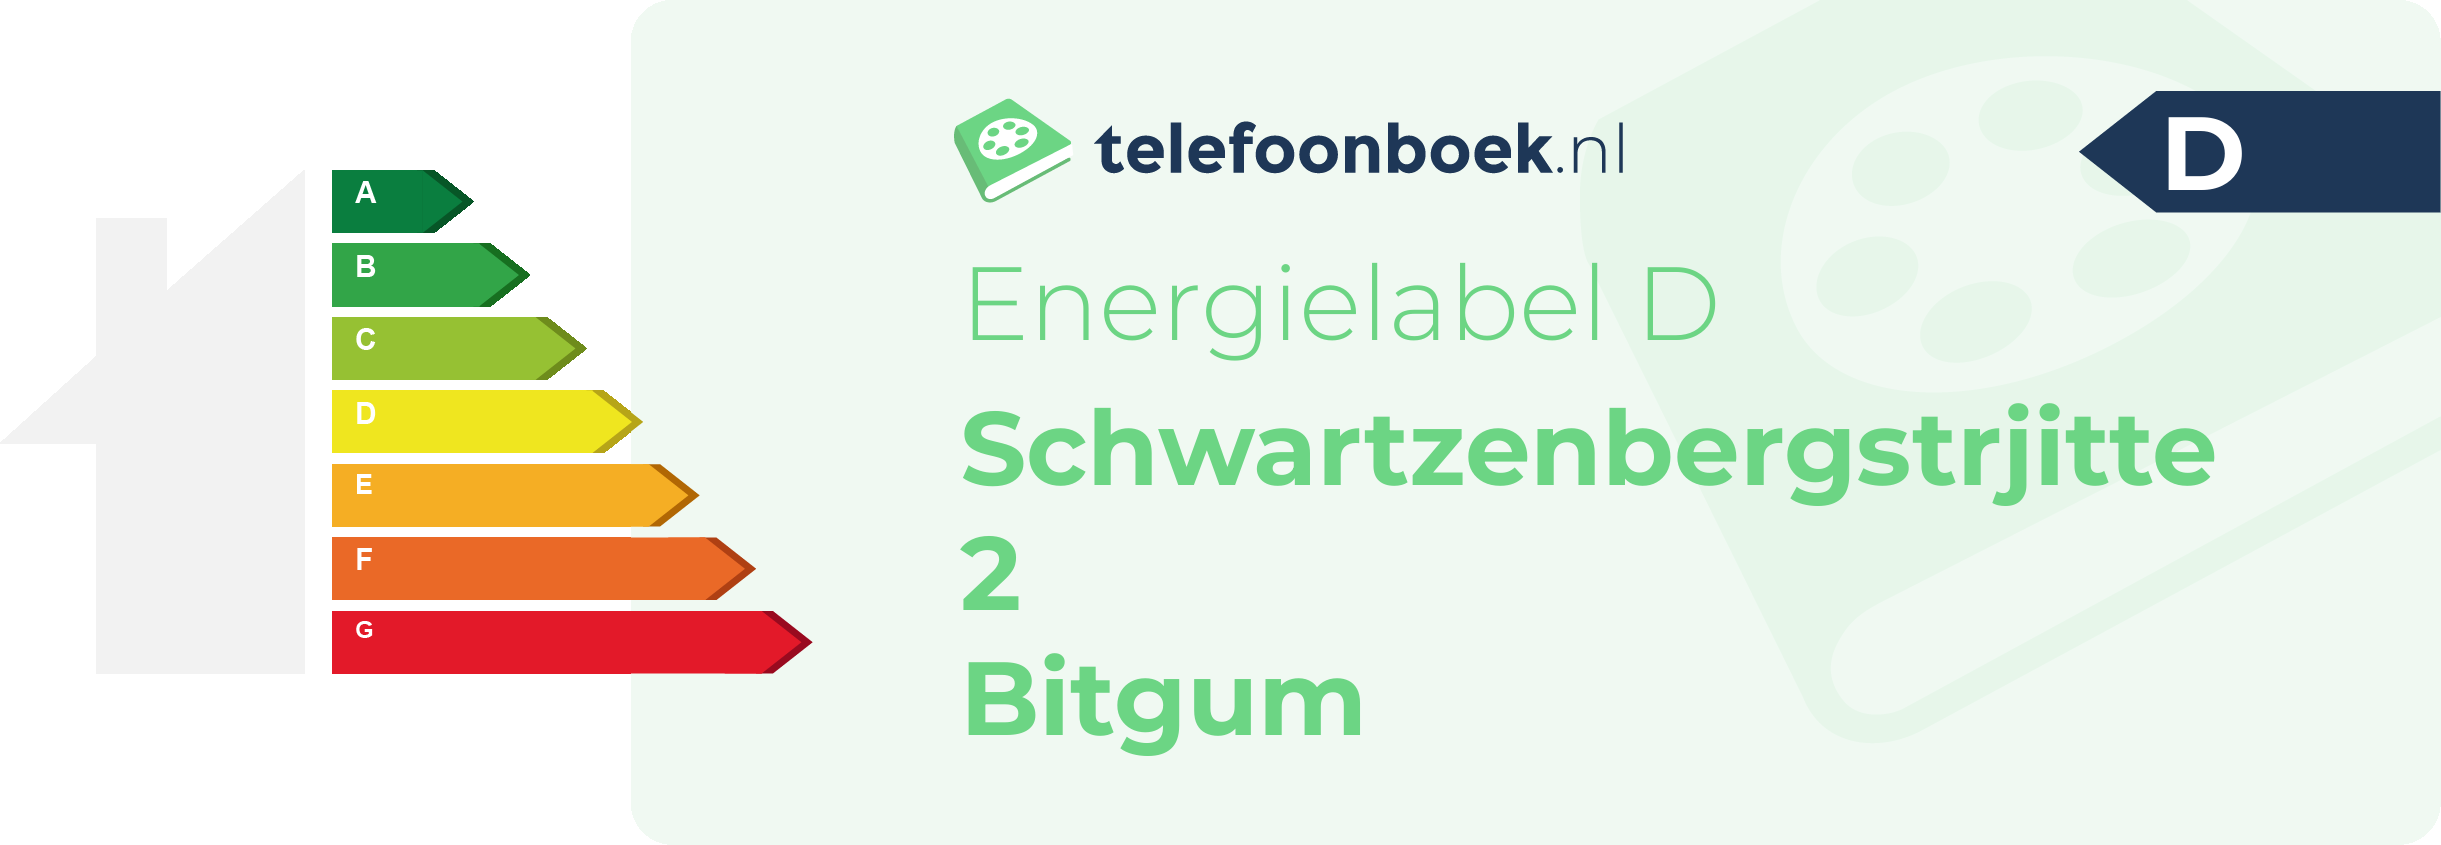 Energielabel Schwartzenbergstrjitte 2 Bitgum